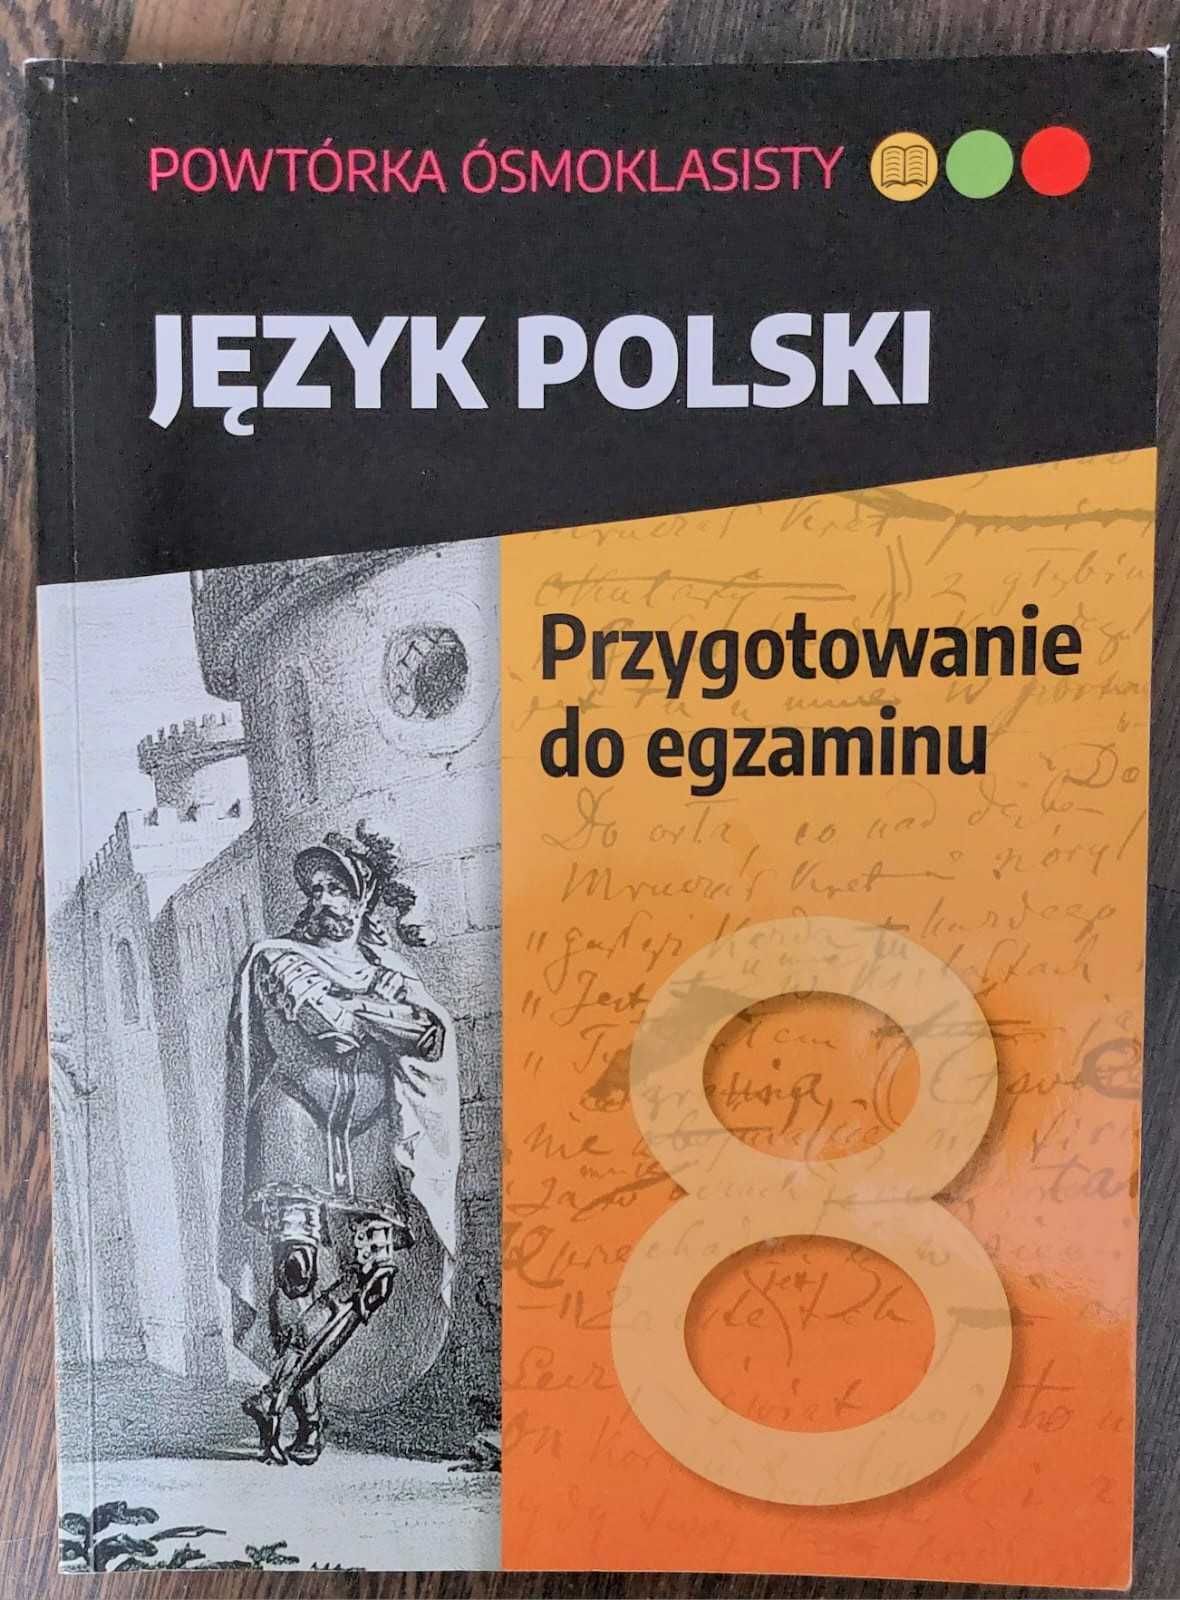 Książka ,,Język polski Przygotowanie do egzaminu ósmoklasisty".